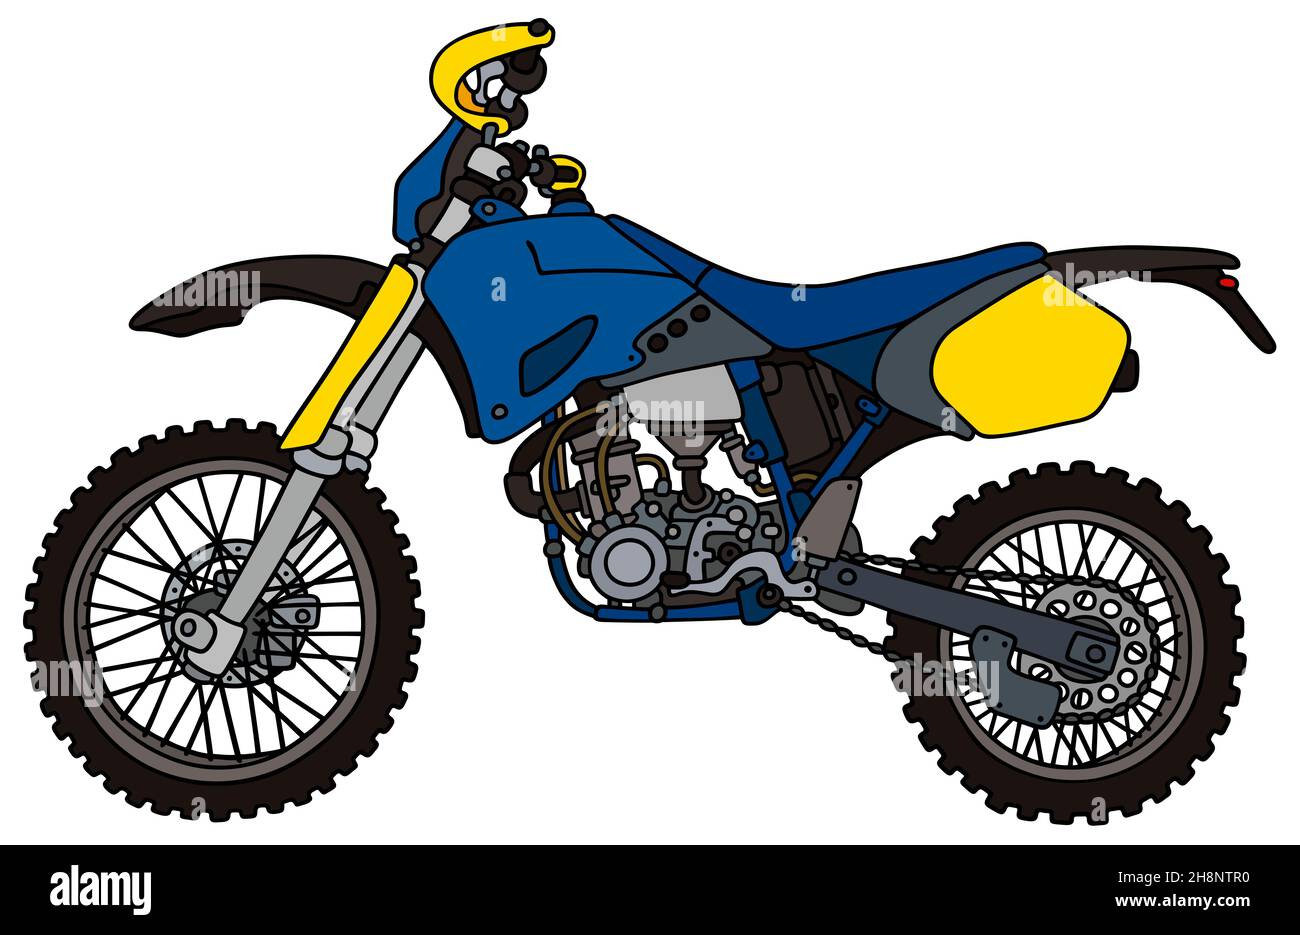 Handzeichnung eines blauen Racing Motocross-Bikes - kein echter Typ Stockfoto